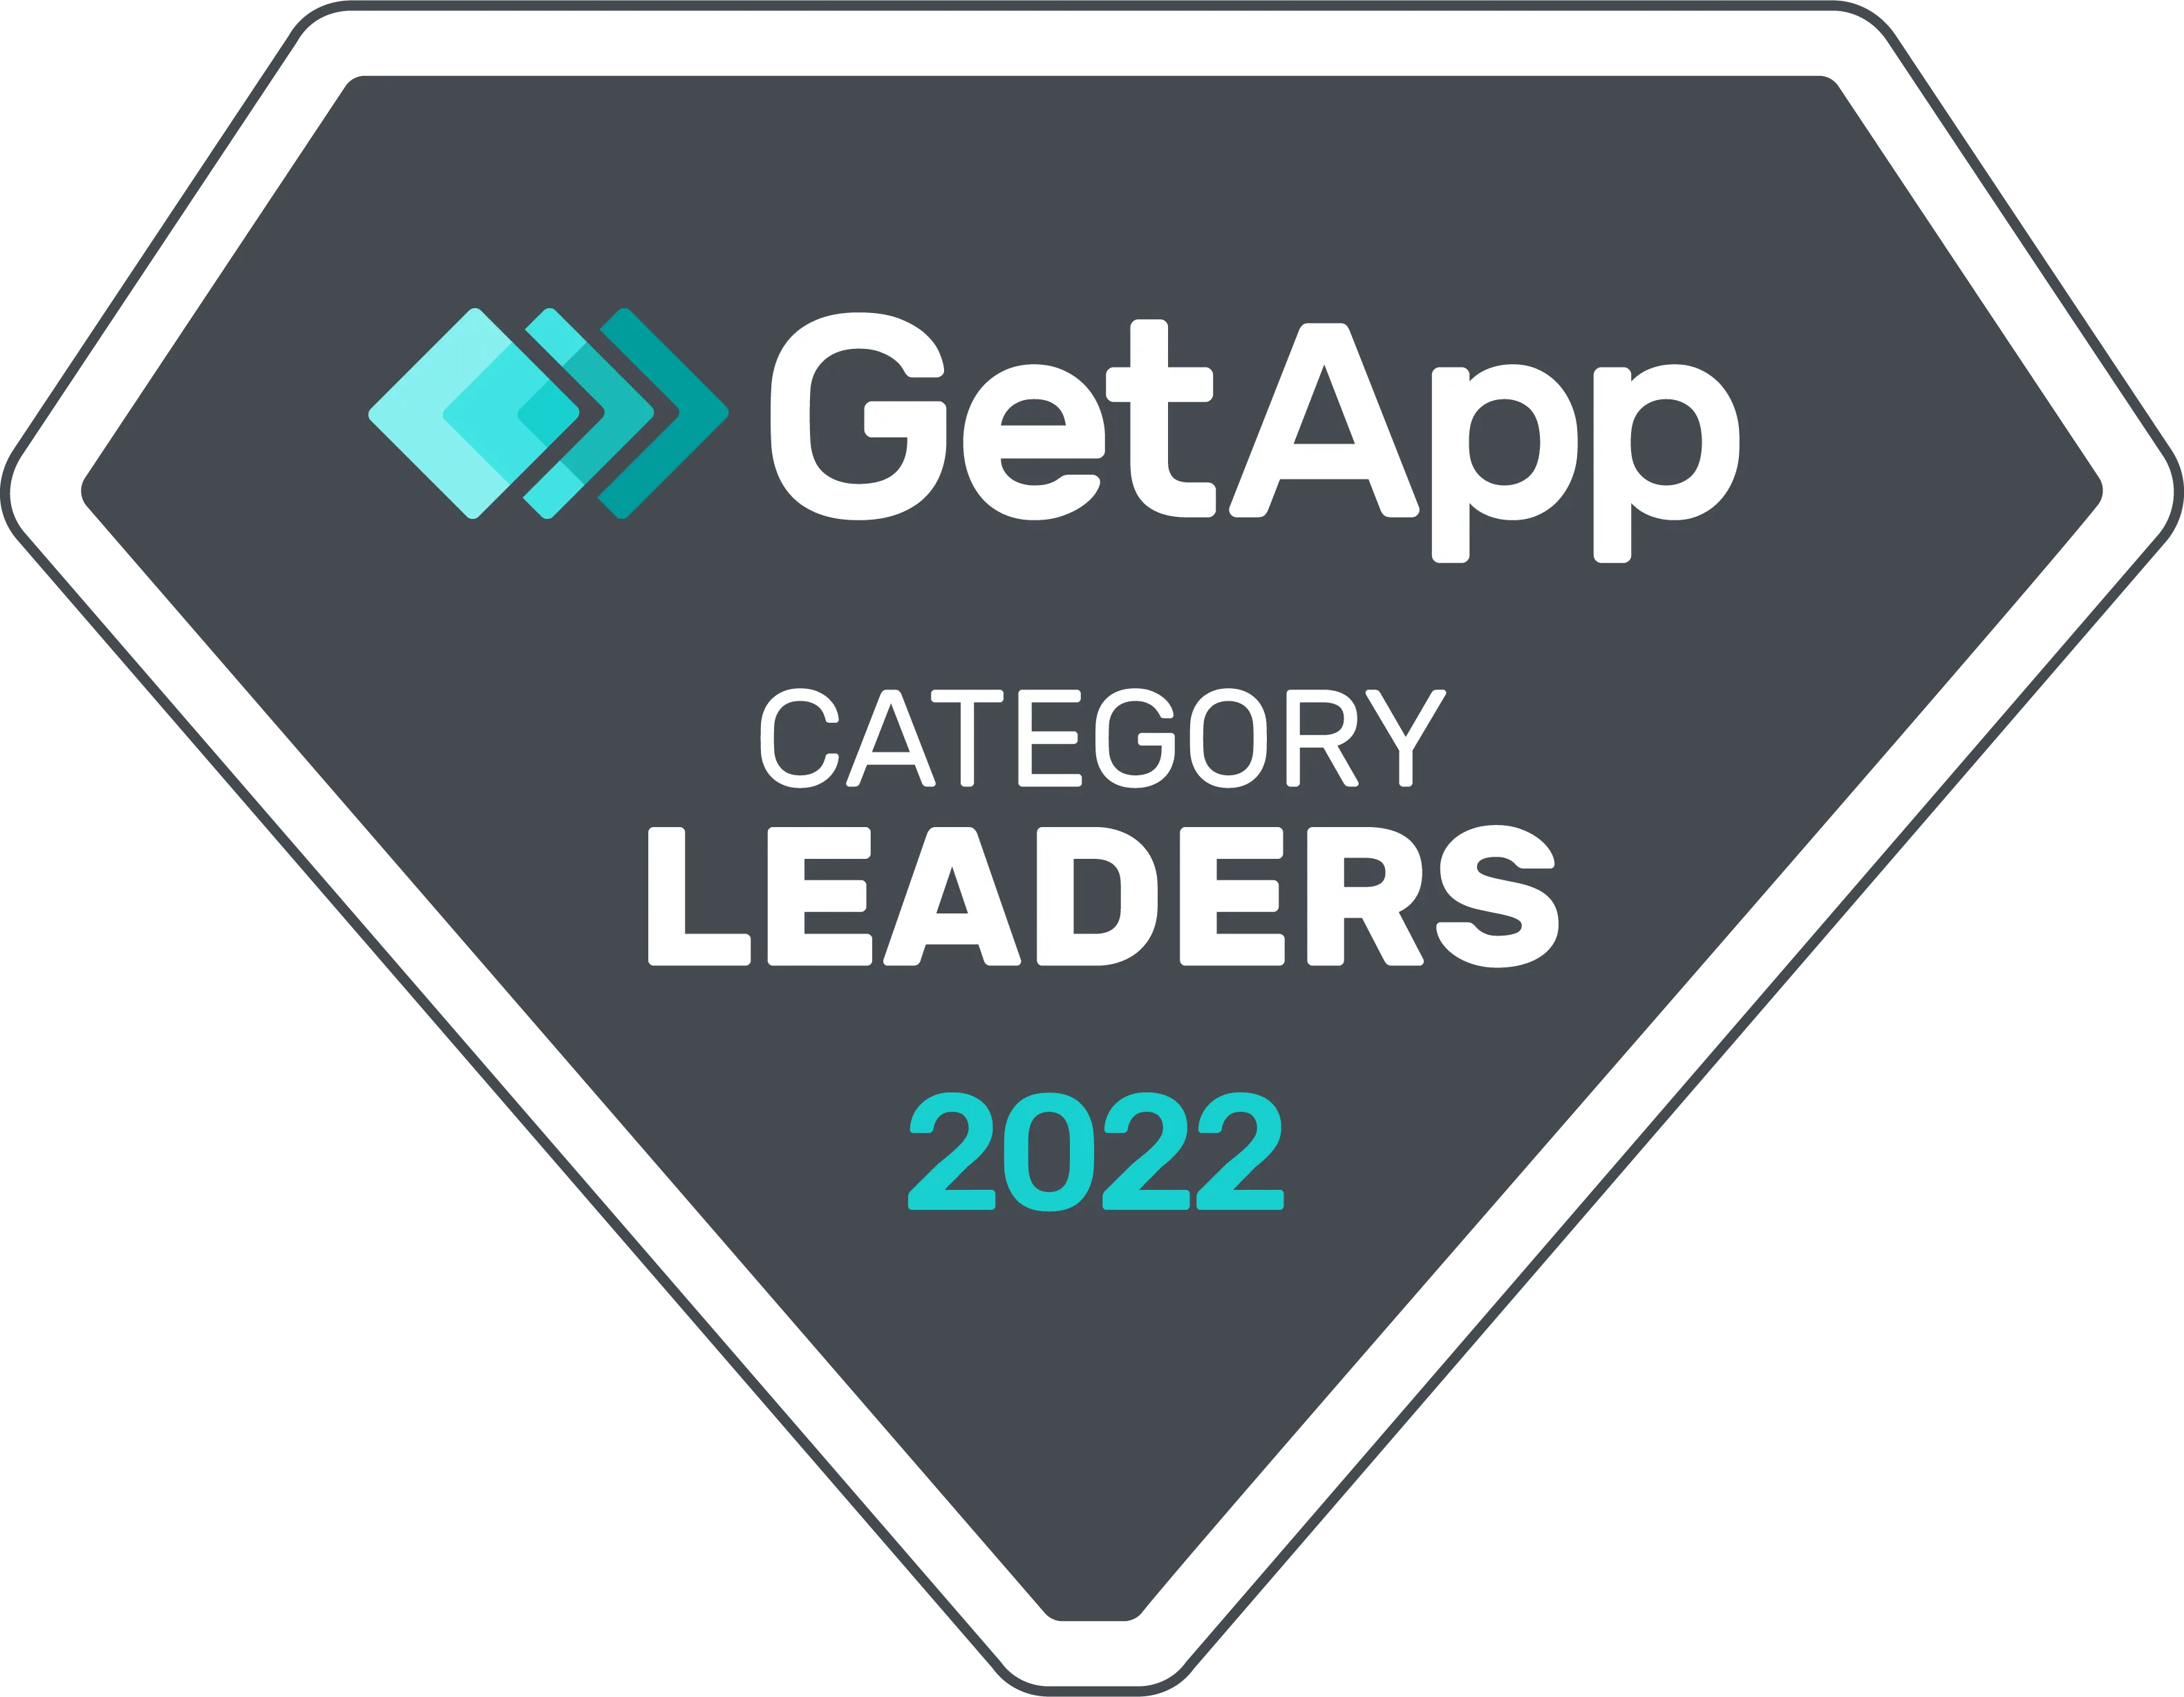 GetApp: Category Leaders 2022